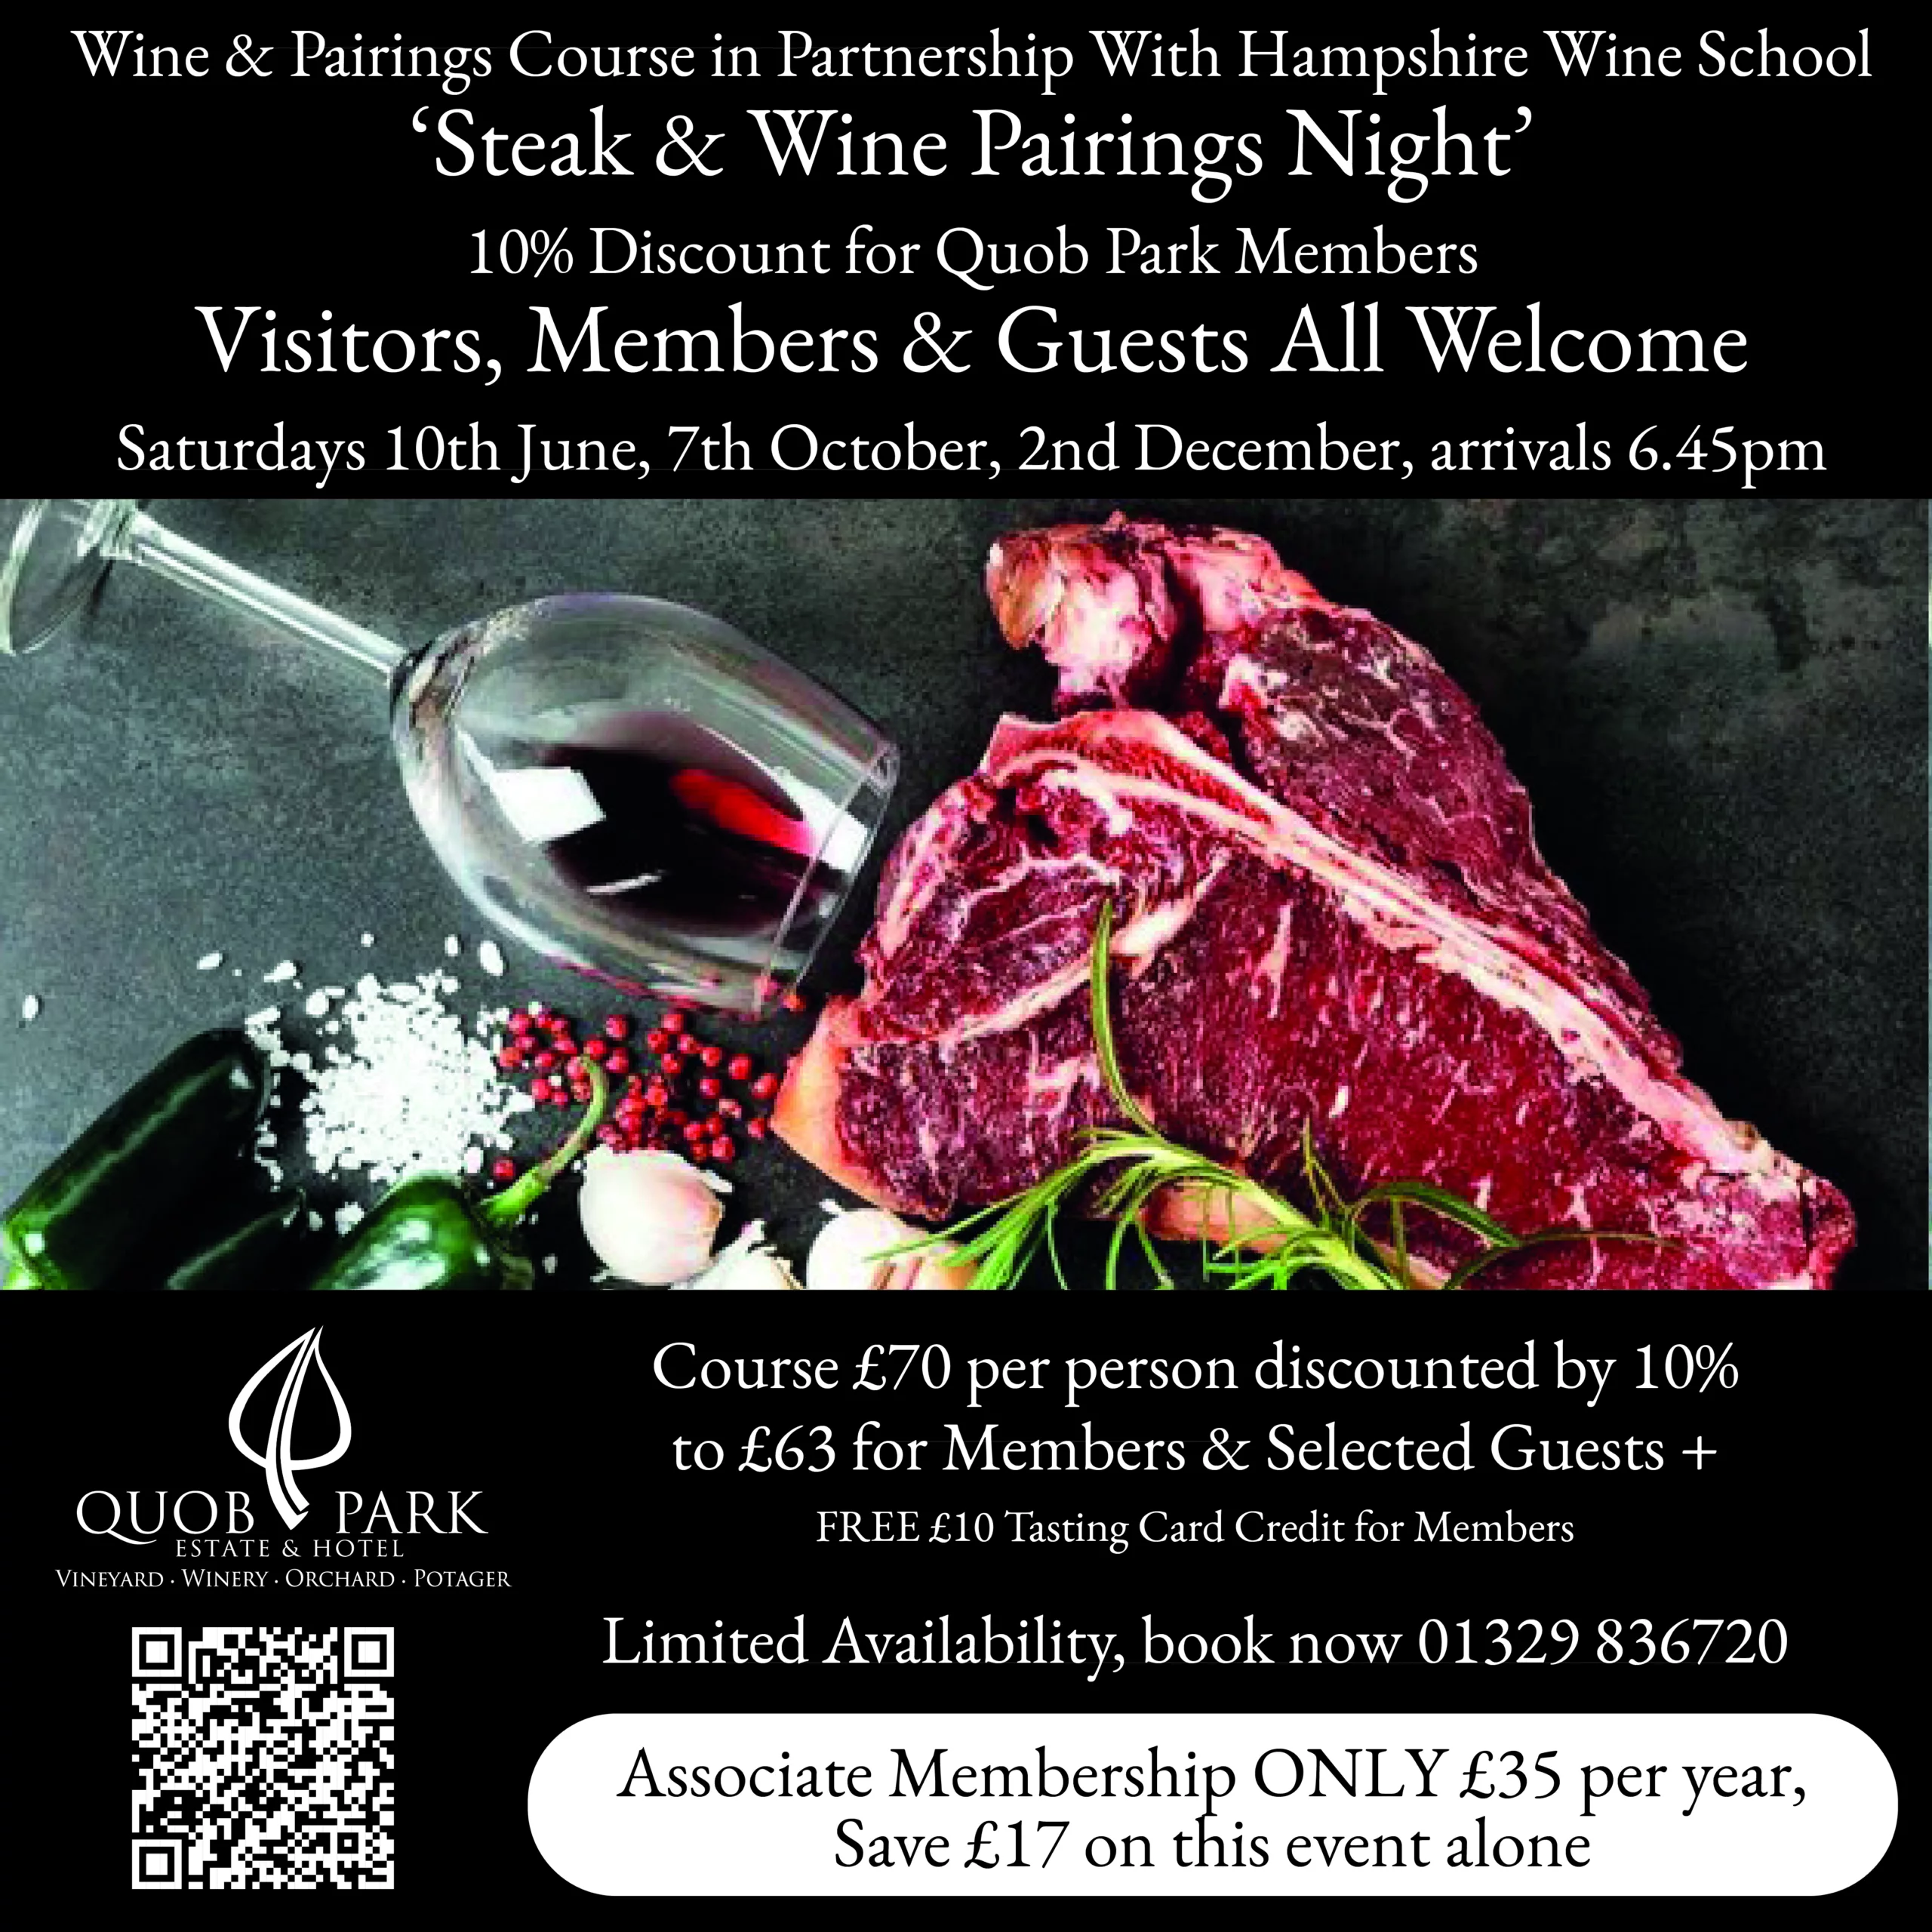 Quob Park Steak & Wine Pairing Night